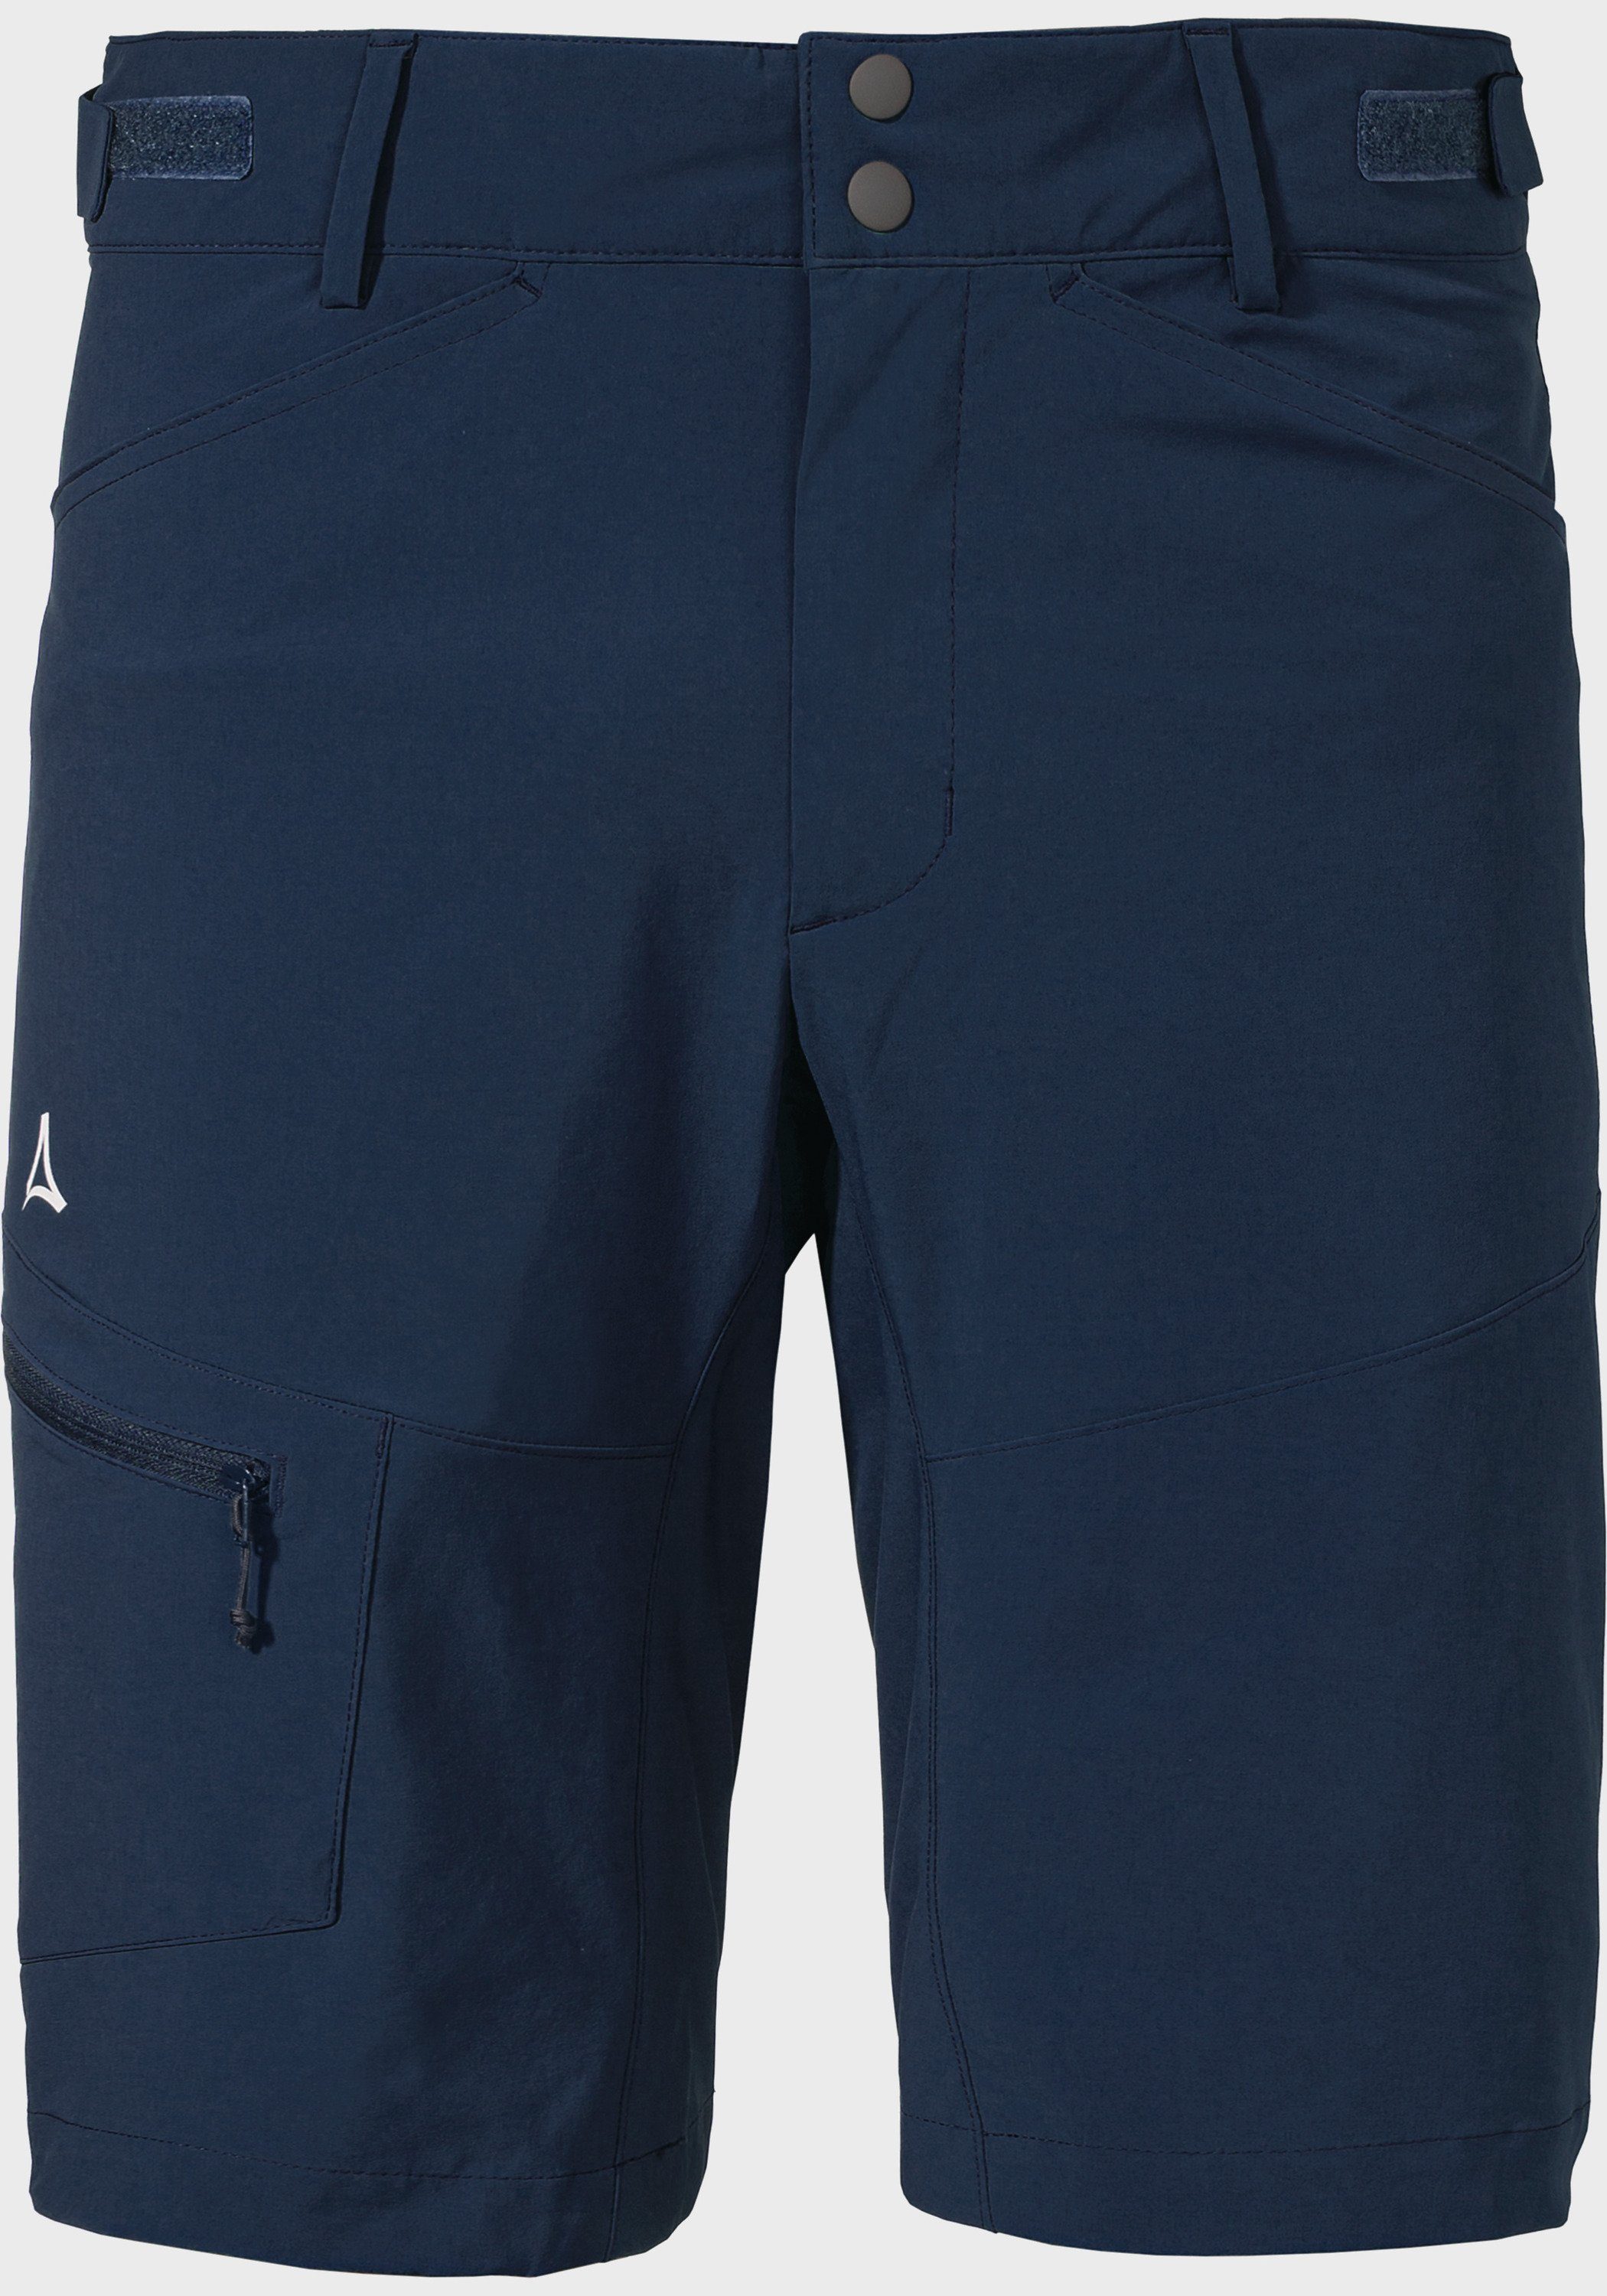 Shorts Algarve M blau Shorts Schöffel